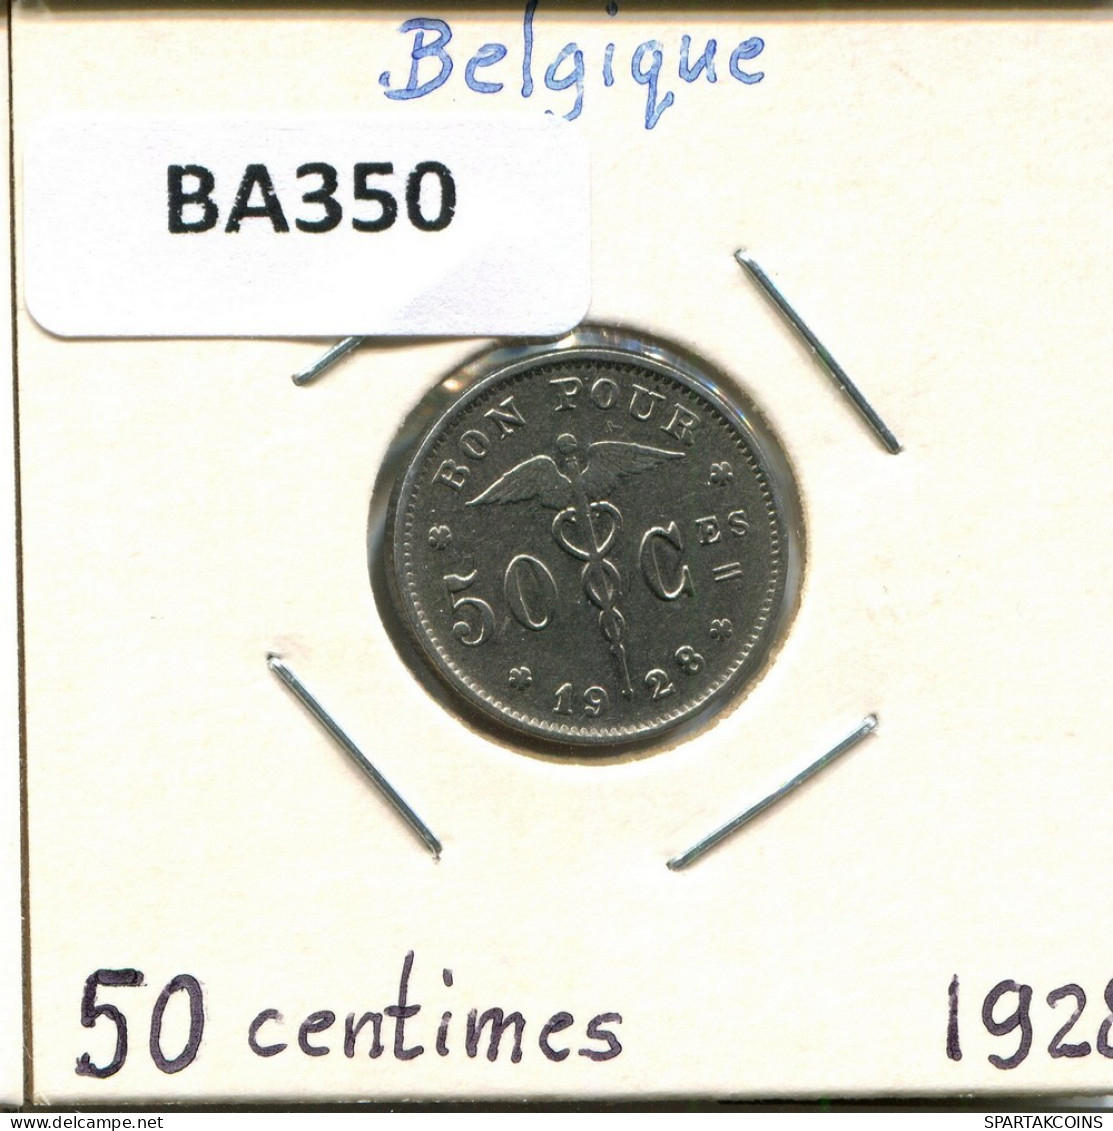 50 CENTIMES 1928 Französisch Text BELGIEN BELGIUM Münze #BA350.D.A - 50 Centimes